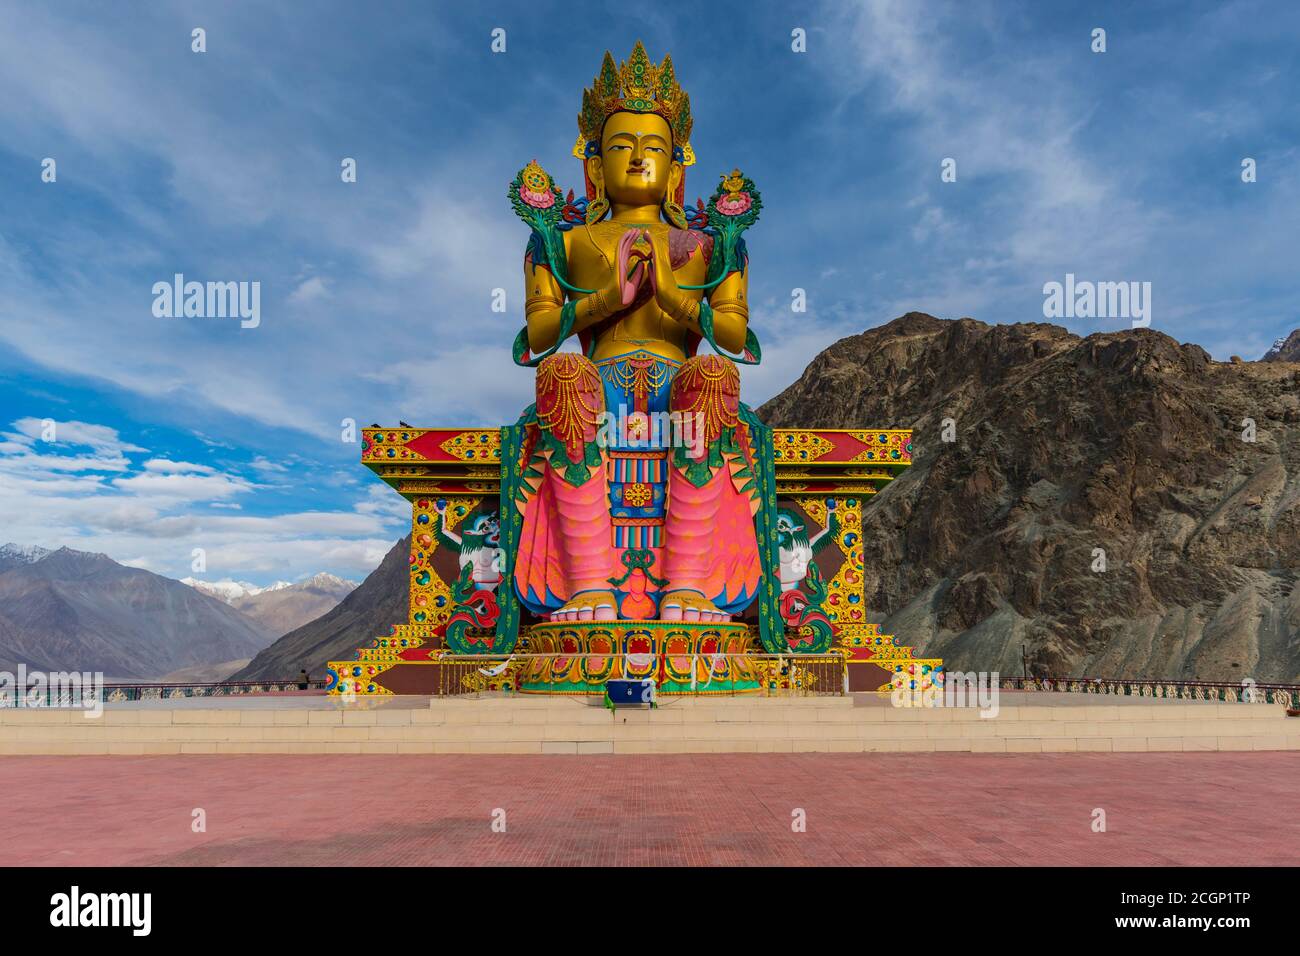 Statue de Maitreya, monastère de Diskit Gompa, Hunder, vallée de Nubra, Ladakh, Jammu-et-Cachemire, Himalaya indien, Inde du Nord, Inde Banque D'Images